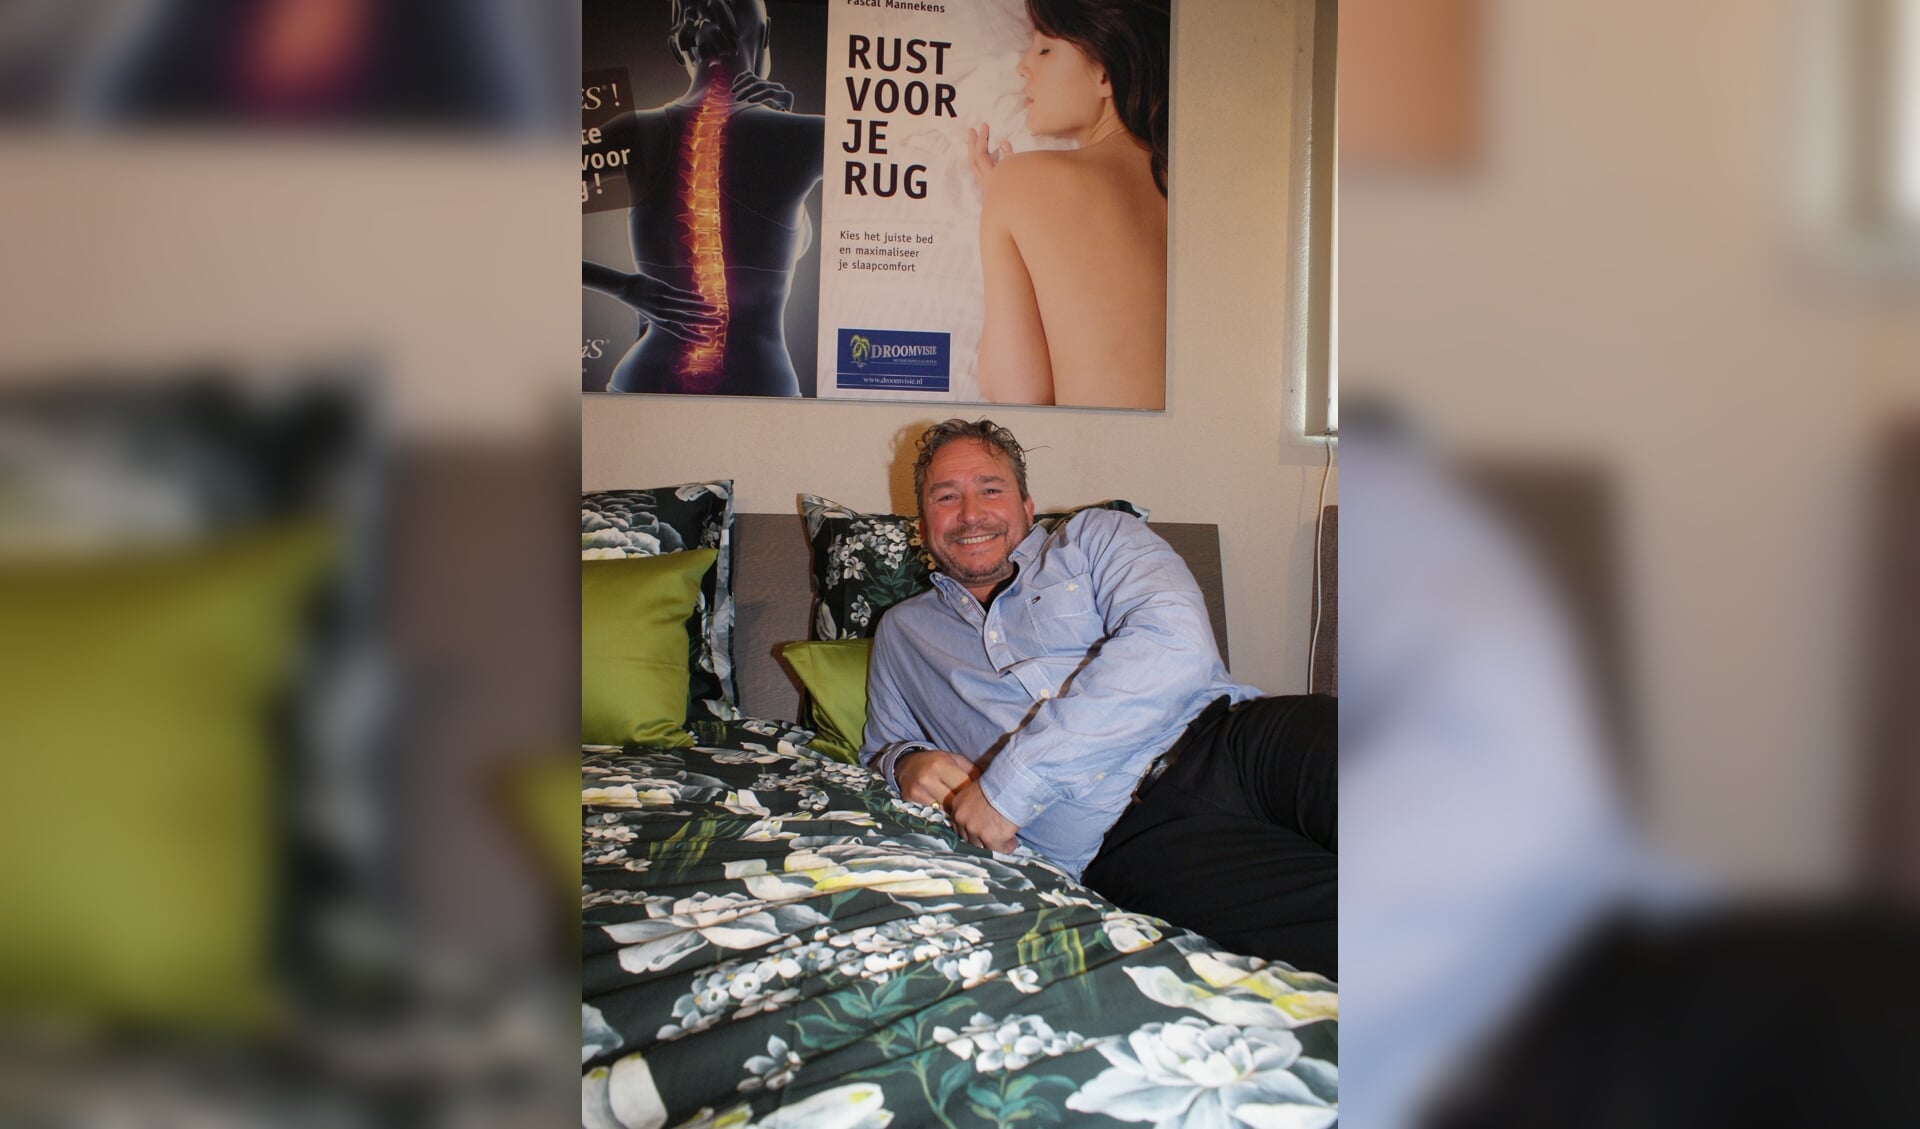 Wat is een goed bed? 'Dat is voor iedereen anders', zegt Jørgen Lammerding van Droomvisie. Klanten kunnen de bedden uitproberen in de winkel van de vijf sterren bedspecialist. Foto: VSK